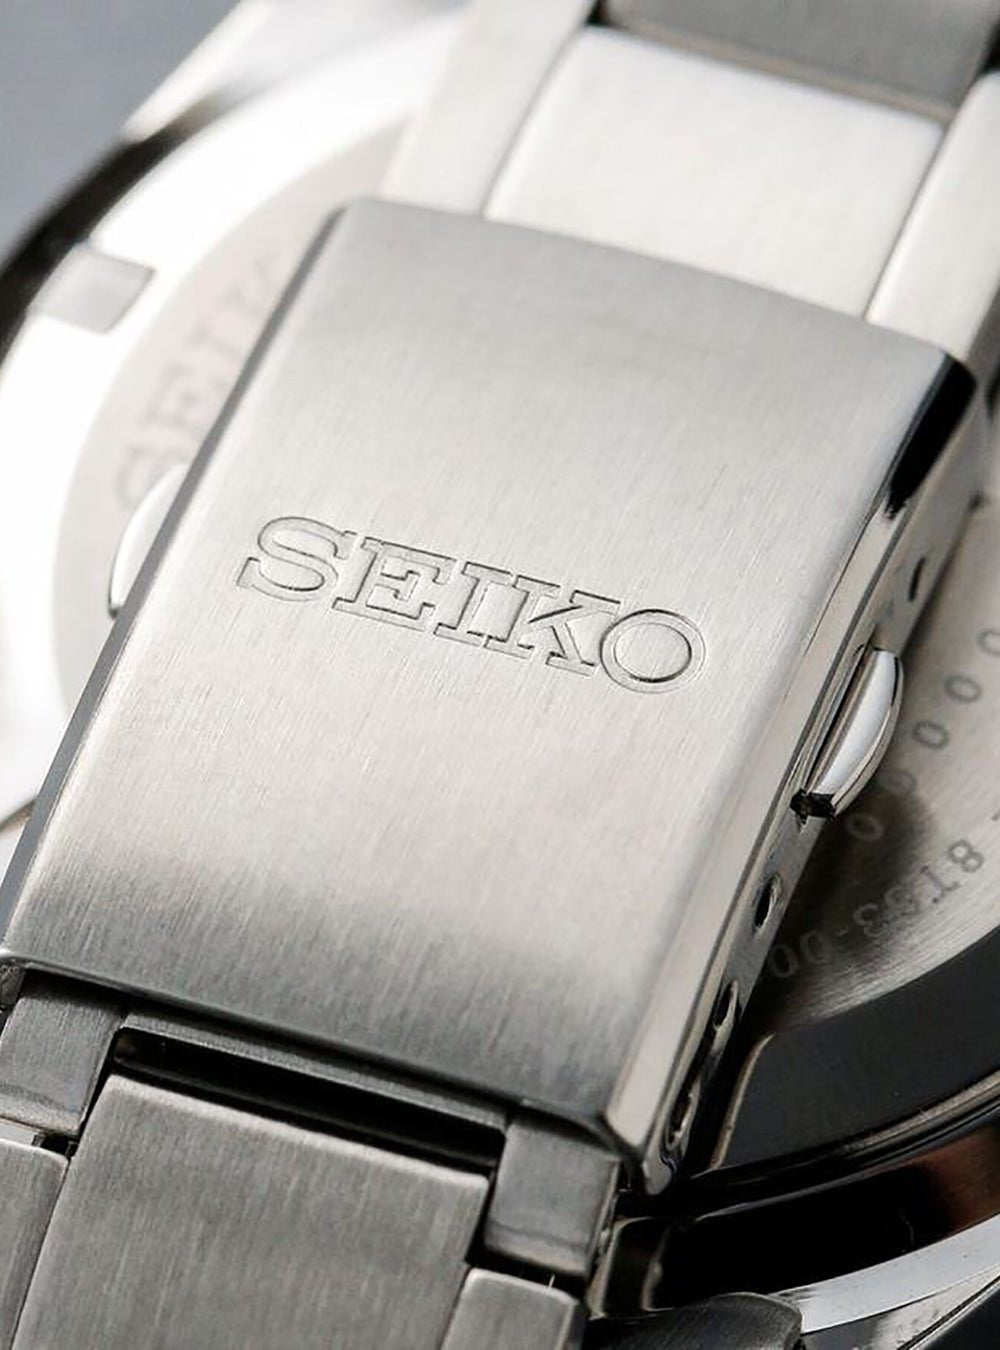 Seiko x Nano Universe Chronograph SZSJ007 MADE IN JAPANWRISTWATCHjapan-select